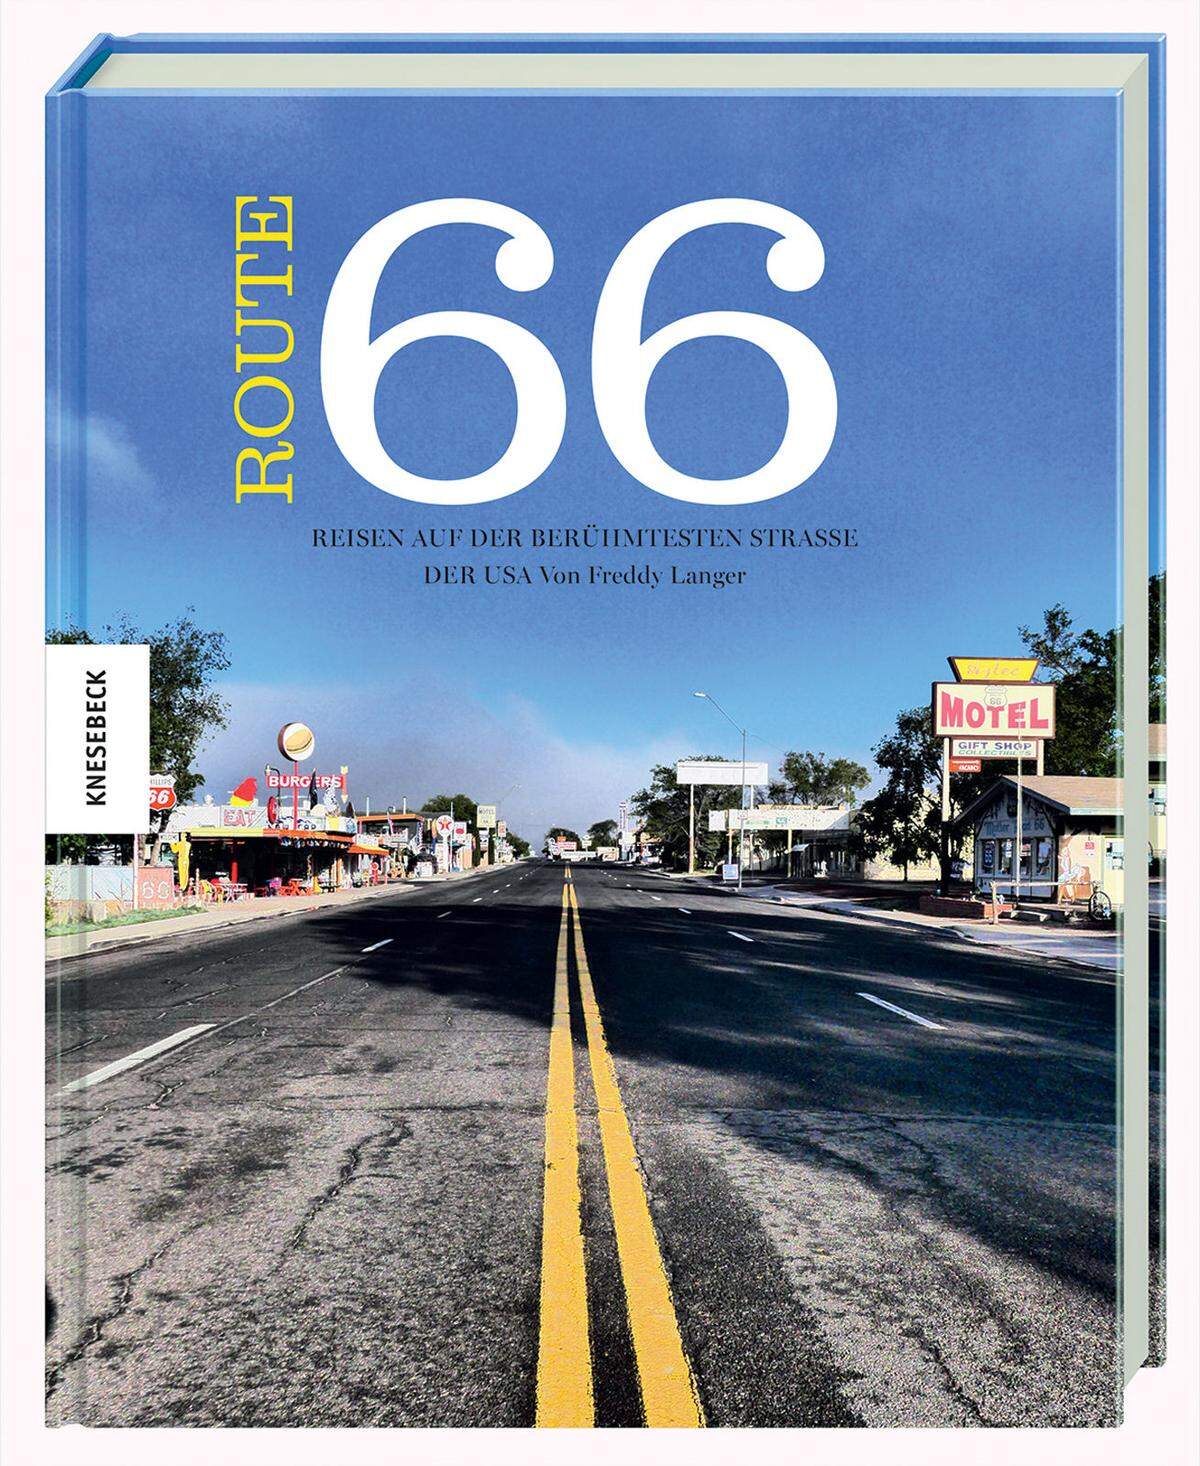 Die Route 66 ist vielleicht nicht so groß wie ihr Mythos, doch Abbruch tut ihr das keinen. Scheunen, Tankstellen, Motels, Leerräume und Durchgangsstationen machen diese Straße zu einem Sinnbild für die USA: eine filmreife Projektionsfläche mit vielen bekannten Sujets. Das reizt On-the-road-Touristen und fasziniert Reiseautoren wie Freddy Langer, der die Route 66 in den letzten 30 Jahren immer wieder befahren und an ihren Seiten auch eine Zeit lang gewohnt hat. Der FAZ-Redakteur legt nun eine Benchmark für Reisebücher vor. Nicht zu Lasten von Textqualität und Gehalt der Geschichten, nicht zu Lasten der Substanz der Fotografie und der Gestaltung. Eine feine Text-Bild-Kongruenz, die quasi von Chicago bis nach Los Angeles mit Bildern durchhält, zugleich den Leser über vieles auf der Route 66 in Kenntnis setzt. Macht große Lust aufs Nachfahren. Freddy Langer: "Route 66. Auf der berühmtesten Straße der USA", Knesebeck Verlag, 34,95, www.knesebeck-verlag.de